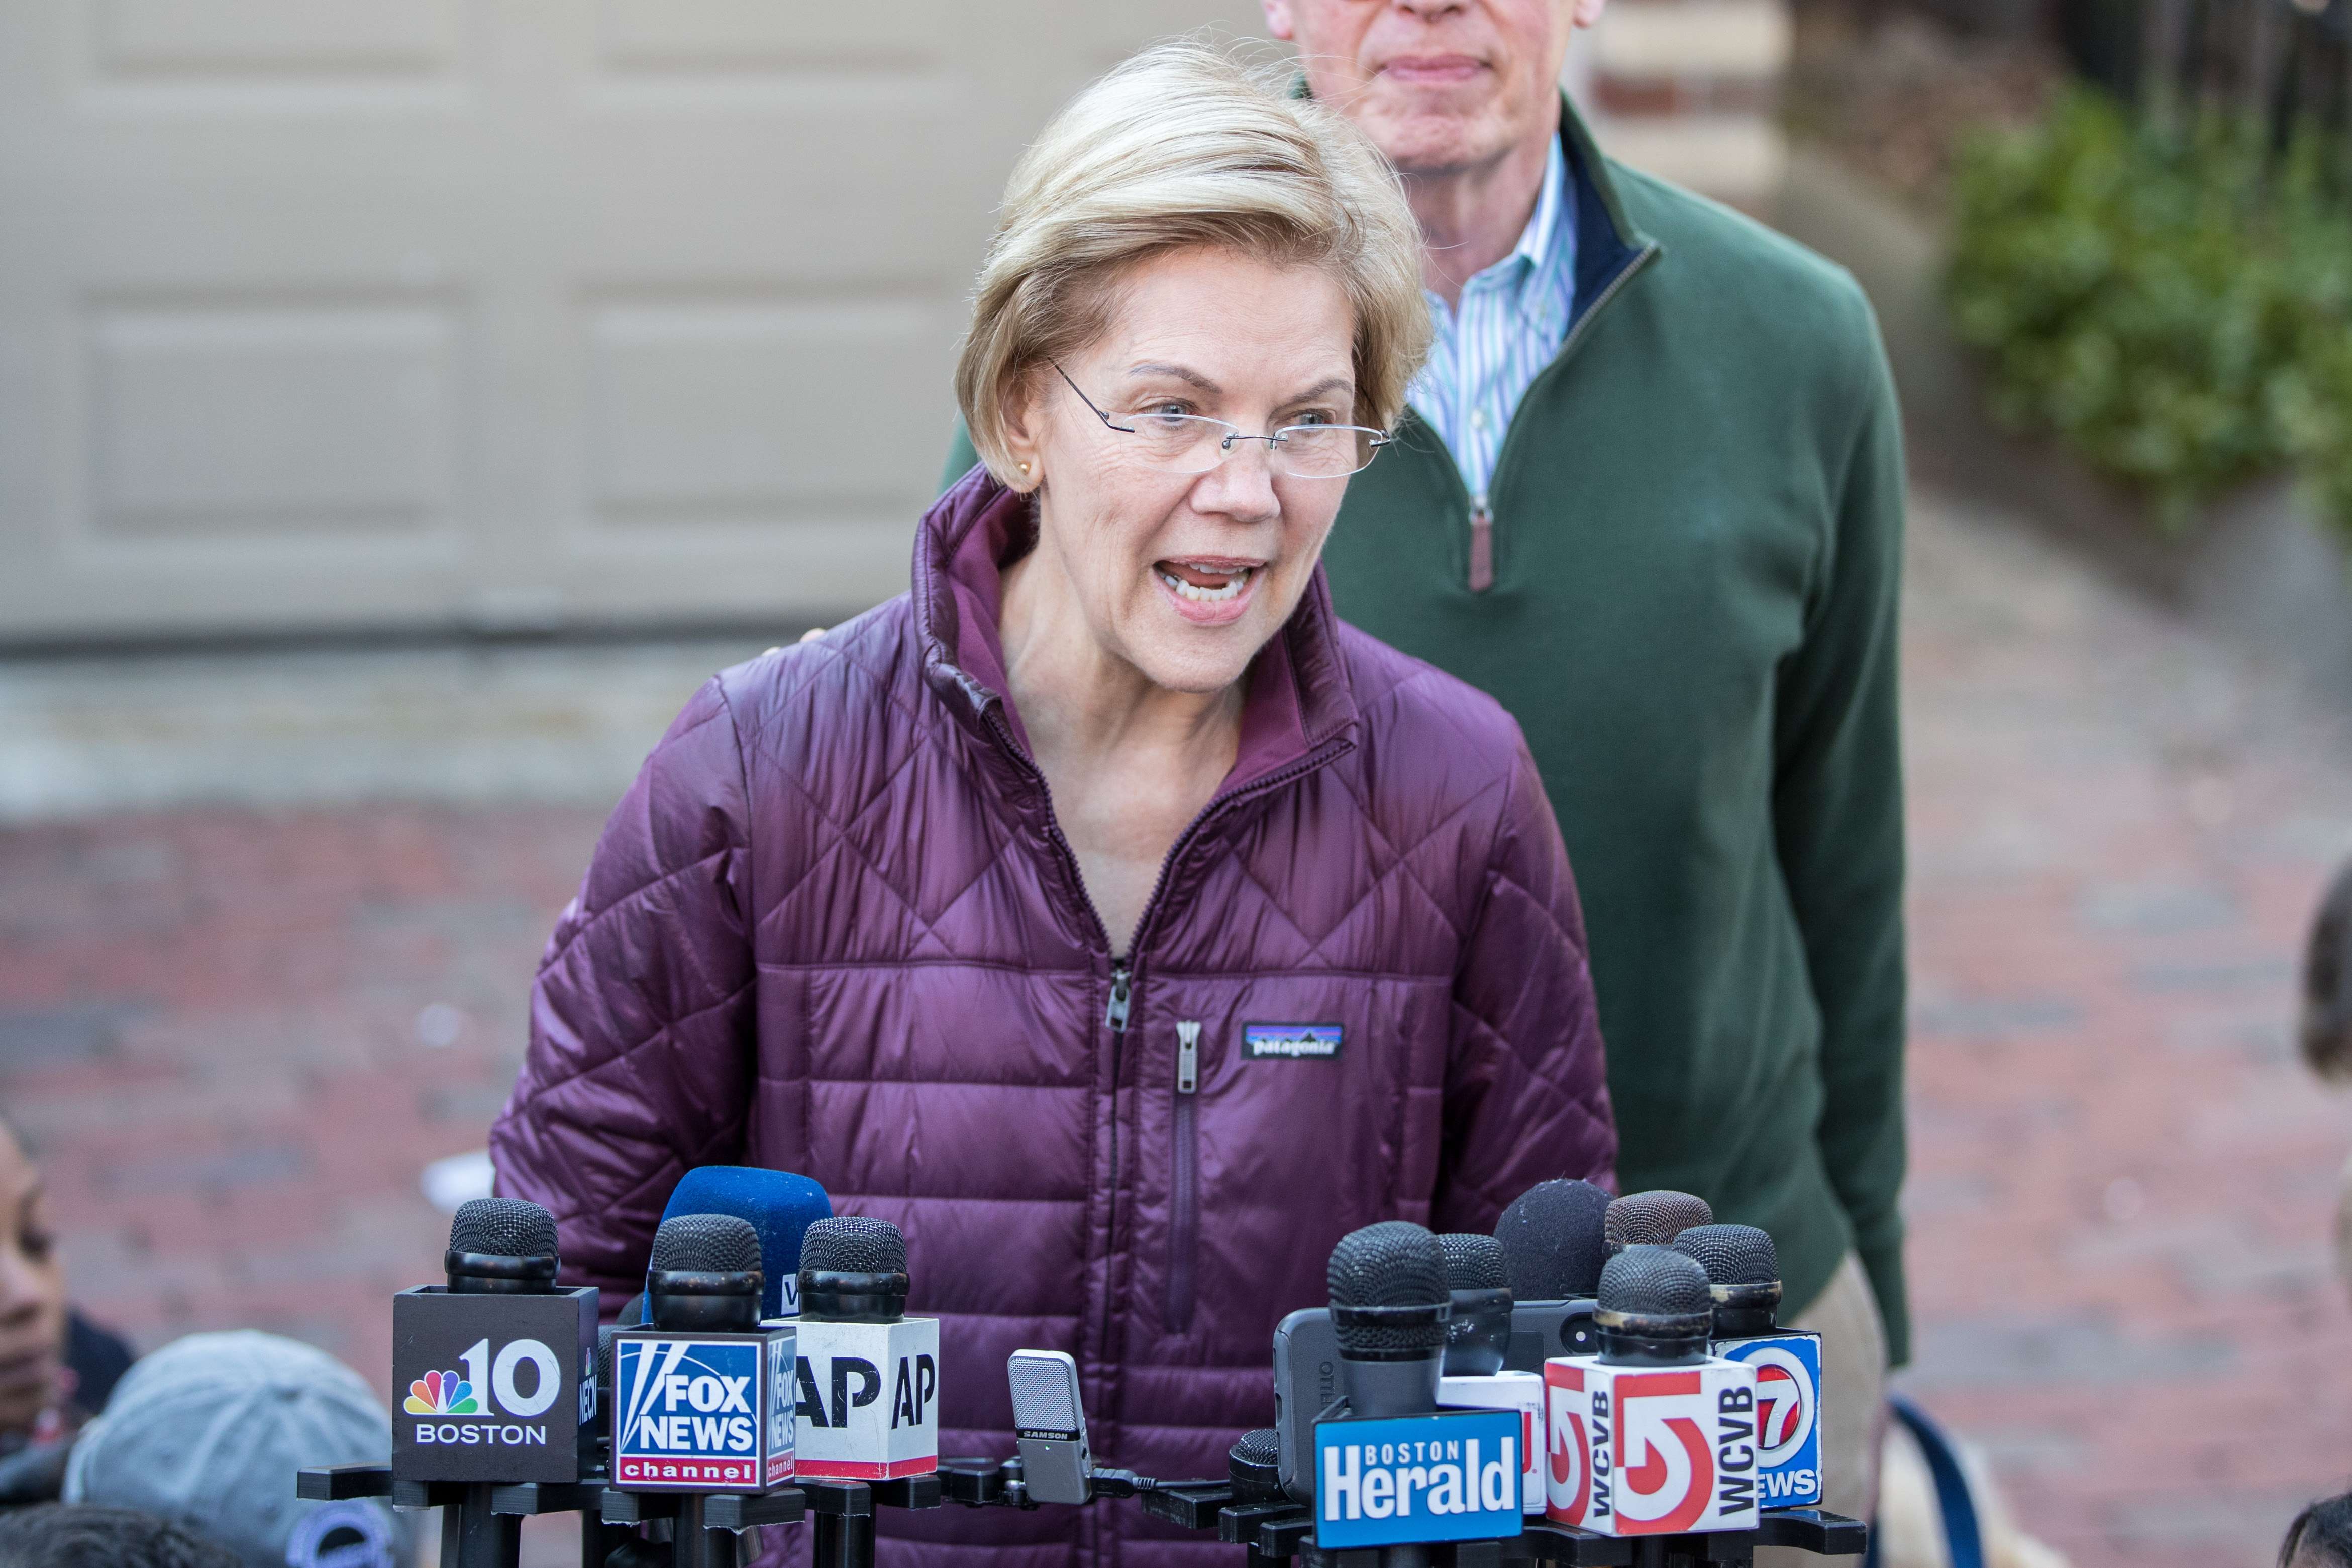 La senadora Elizabeth Warren mostró su preocupación por el incidente y pidió una investigación idependiente. Foto Prensa Libre: AFP 